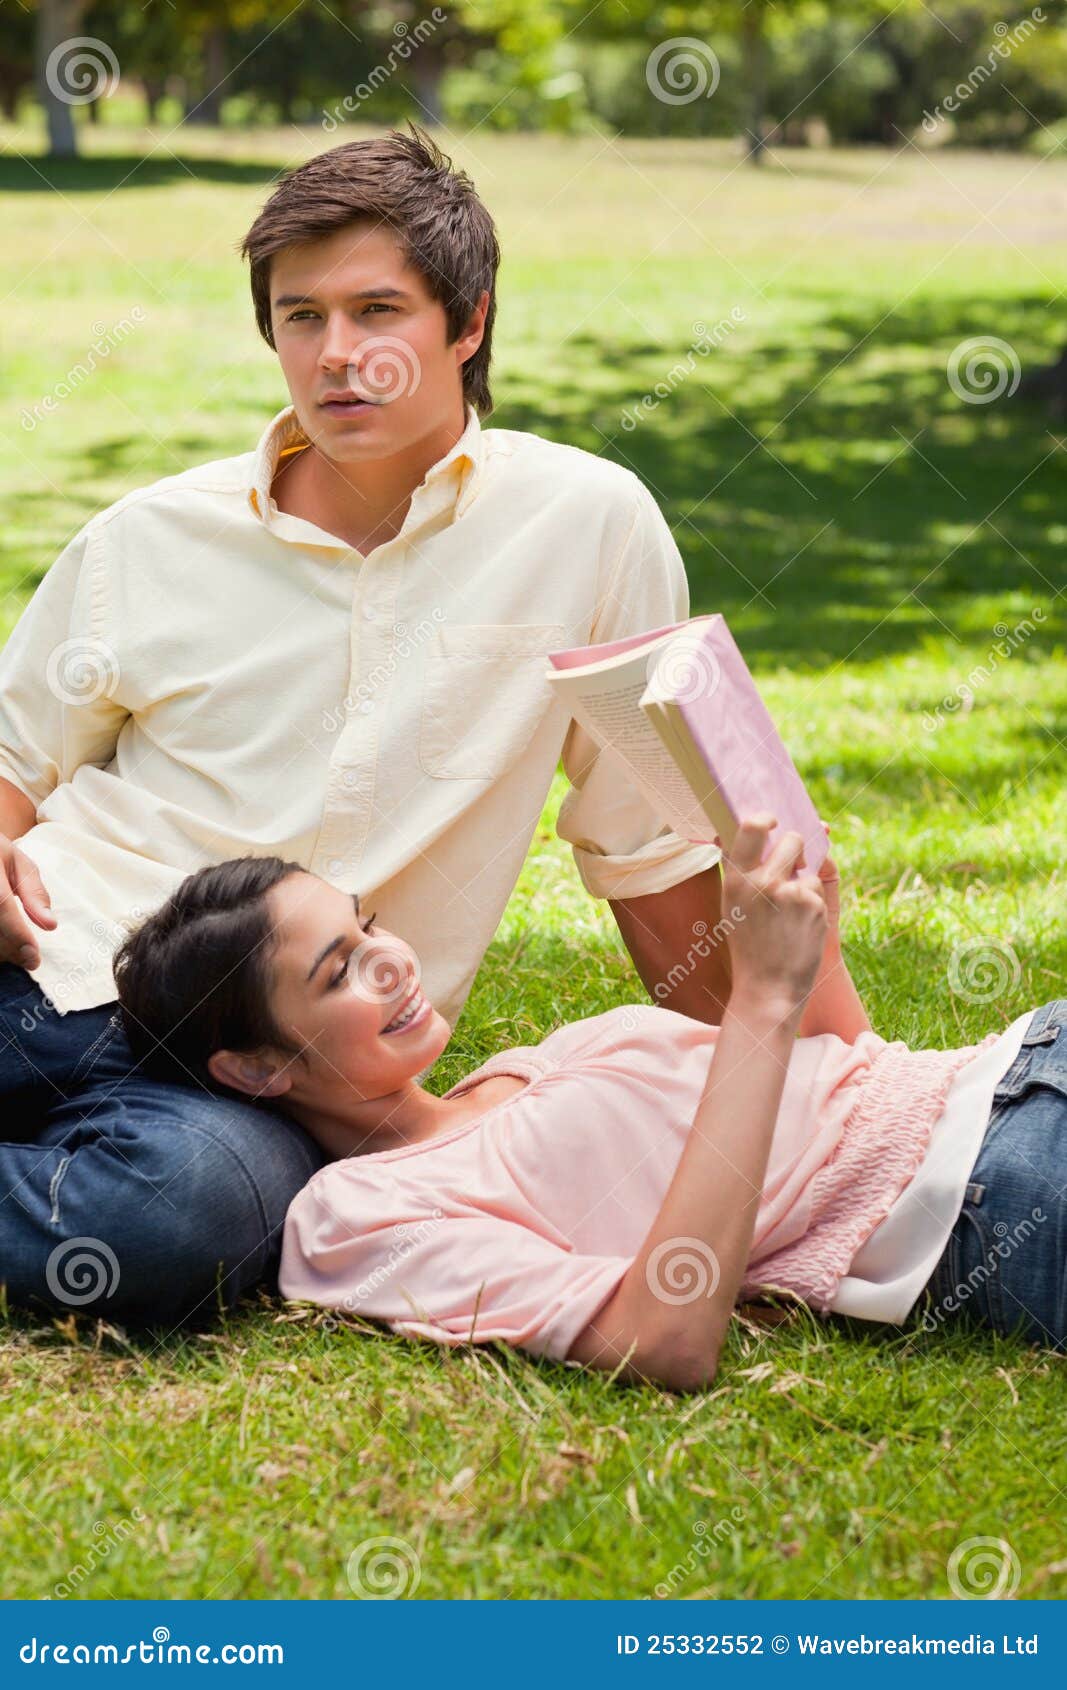 Γυναίκα που βρίσκεται ενάντια στο πόδι του φίλου της ενώ διαβάζει. Γυναίκα που χαμογελά ενώ βρίσκεται ενάντια στο πόδι του φίλου της δεδομένου ότι διαβάζει ένα βιβλίο